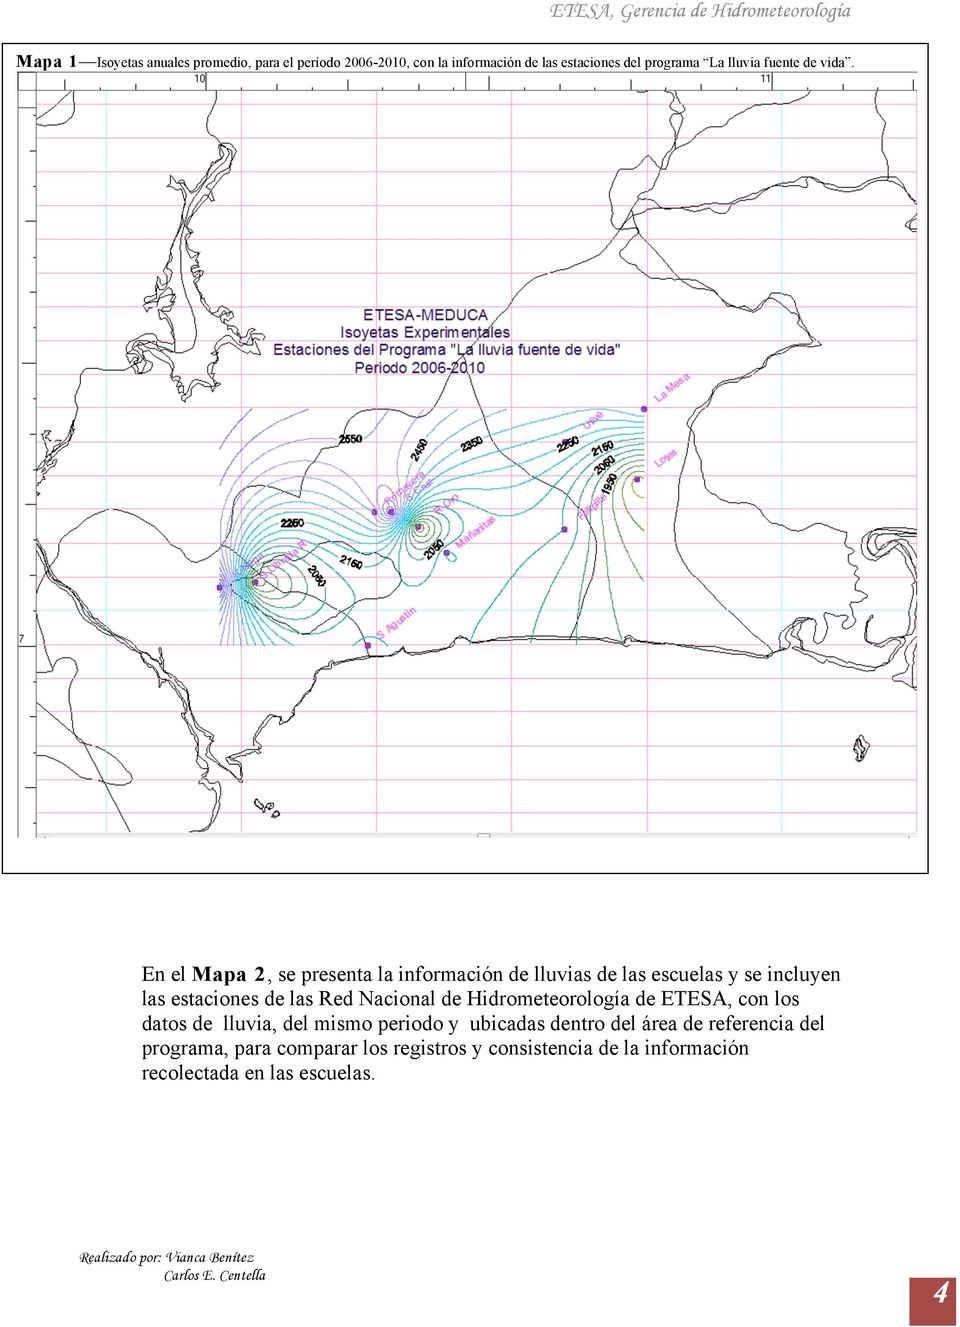 En el Mapa 2, se presenta la información de lluvias de las escuelas y se incluyen las estaciones de las Red Nacional